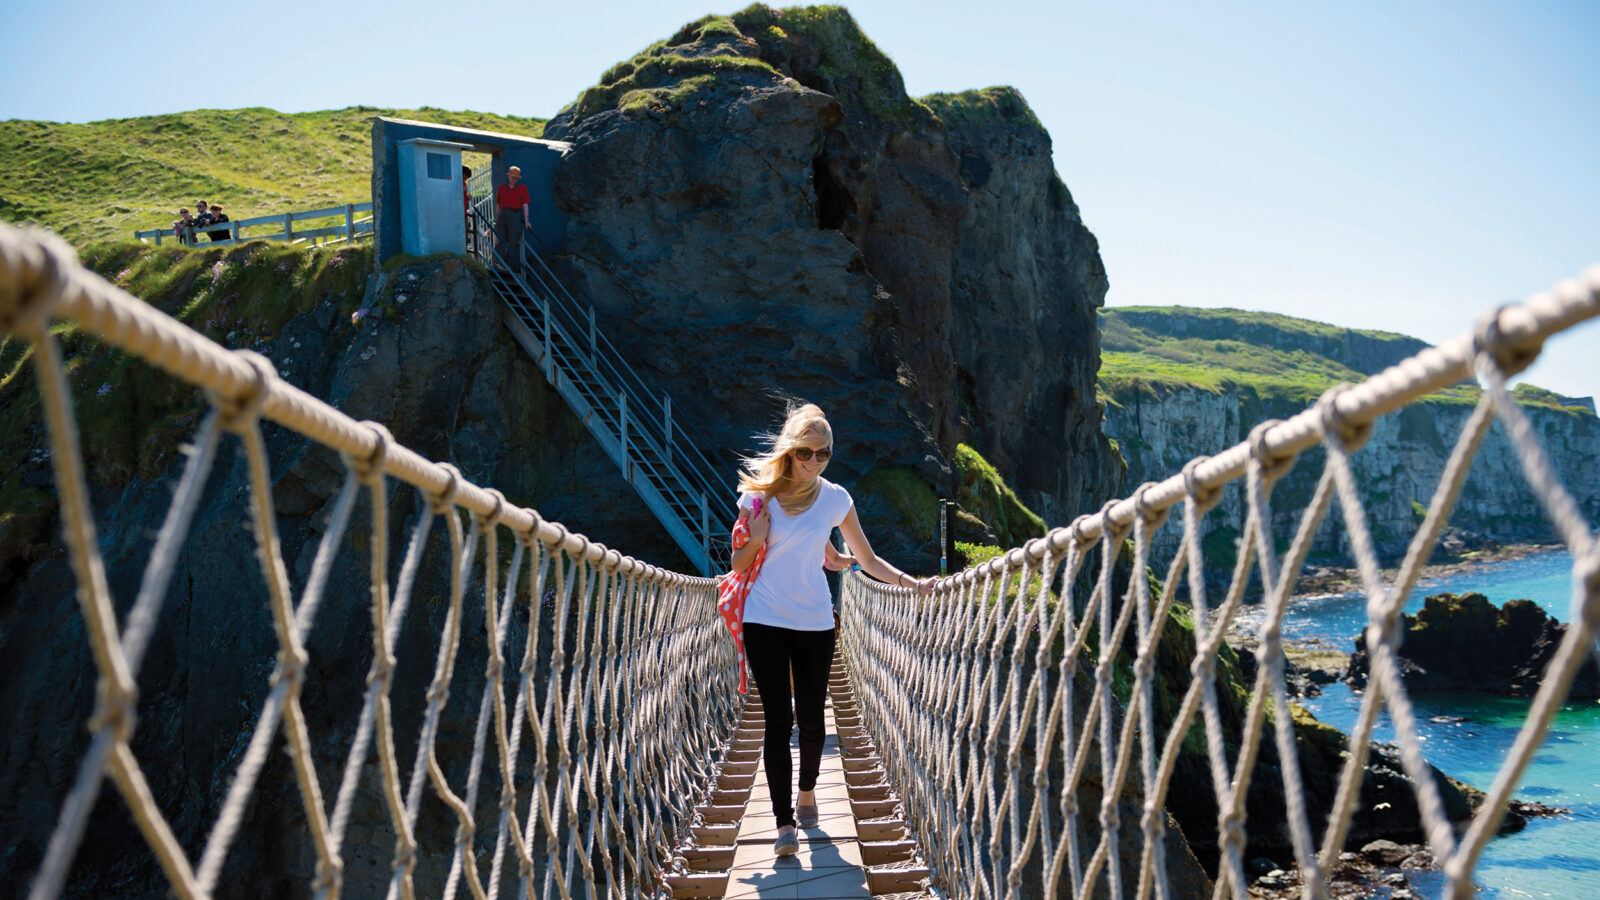 woman walks across rope bridge on cliffs near ocean in Ireland